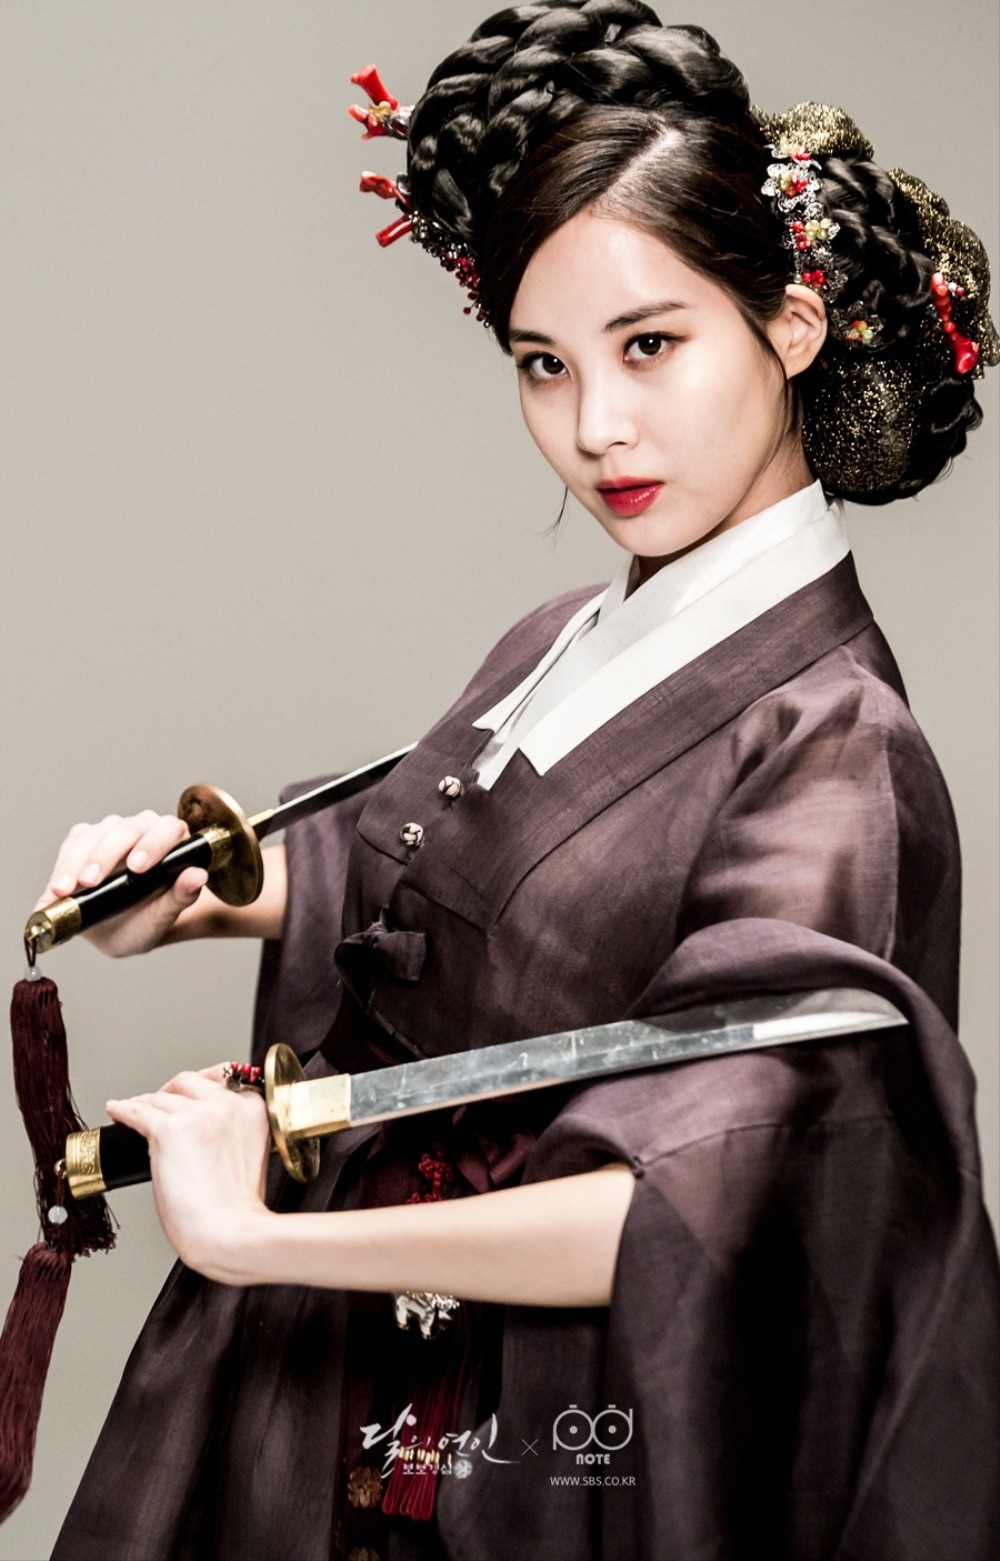 
Seohyun với tạo hình cổ trang quý tộc của một cô công chúa "cành vàng lá ngọc"